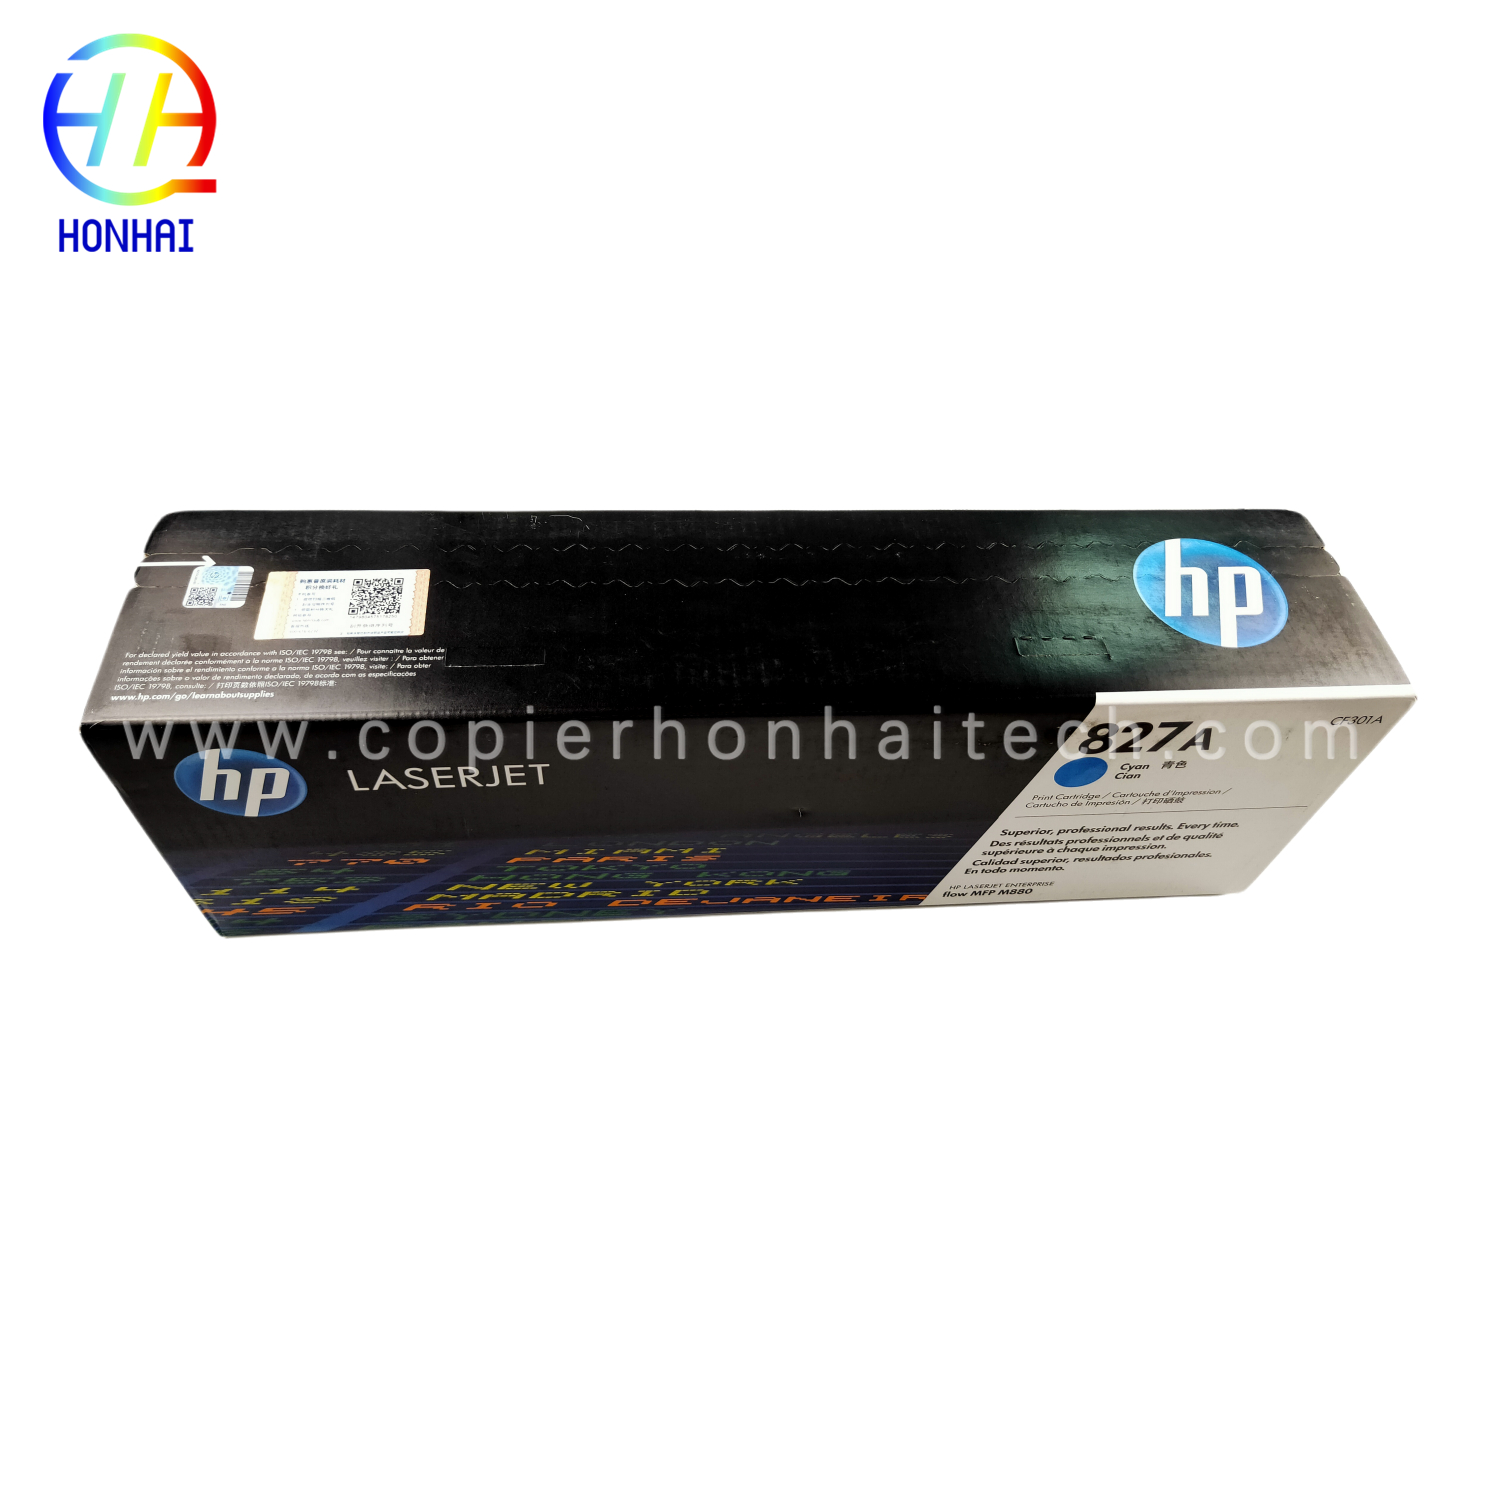 https://www.copierhonhaitech.com/origen-new-toner-cartridge-for-hp-mfp-m880-827a-cf301a-product/